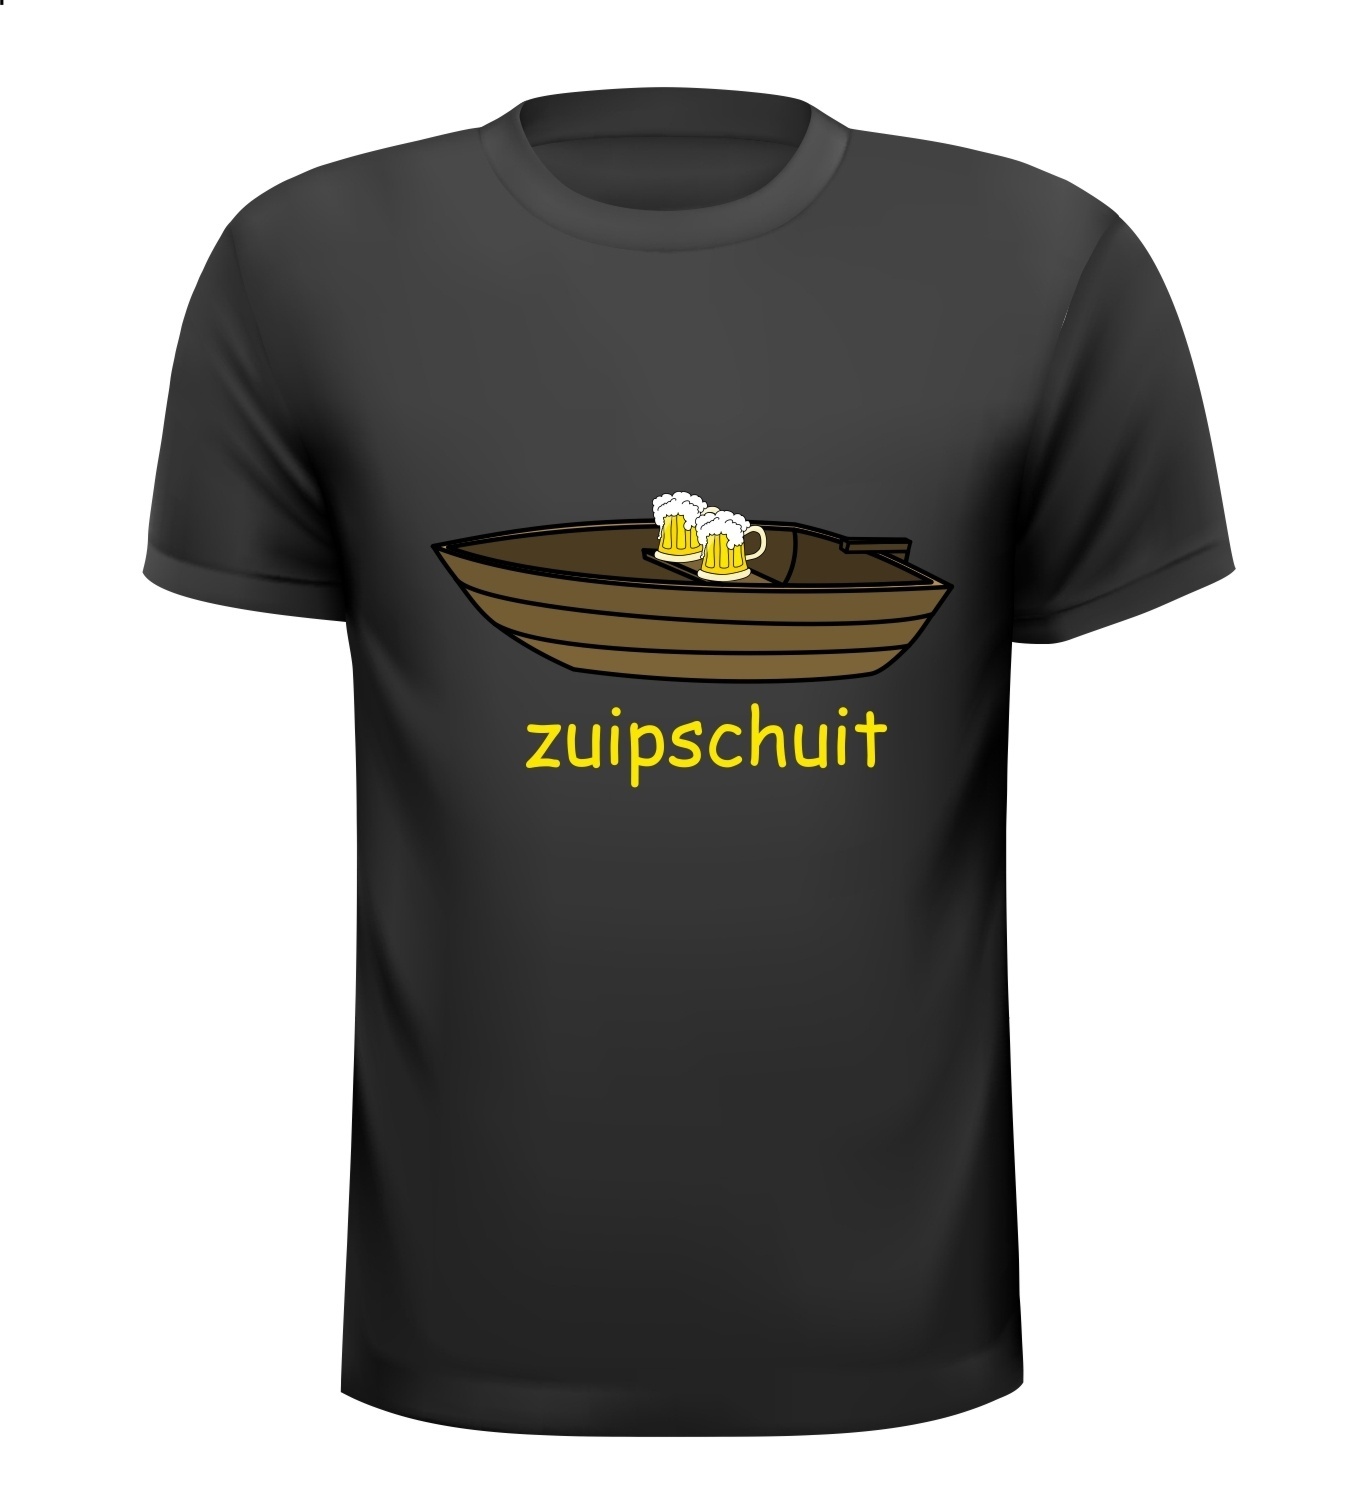 Zuipschuit drank bier carnaval T-shirt